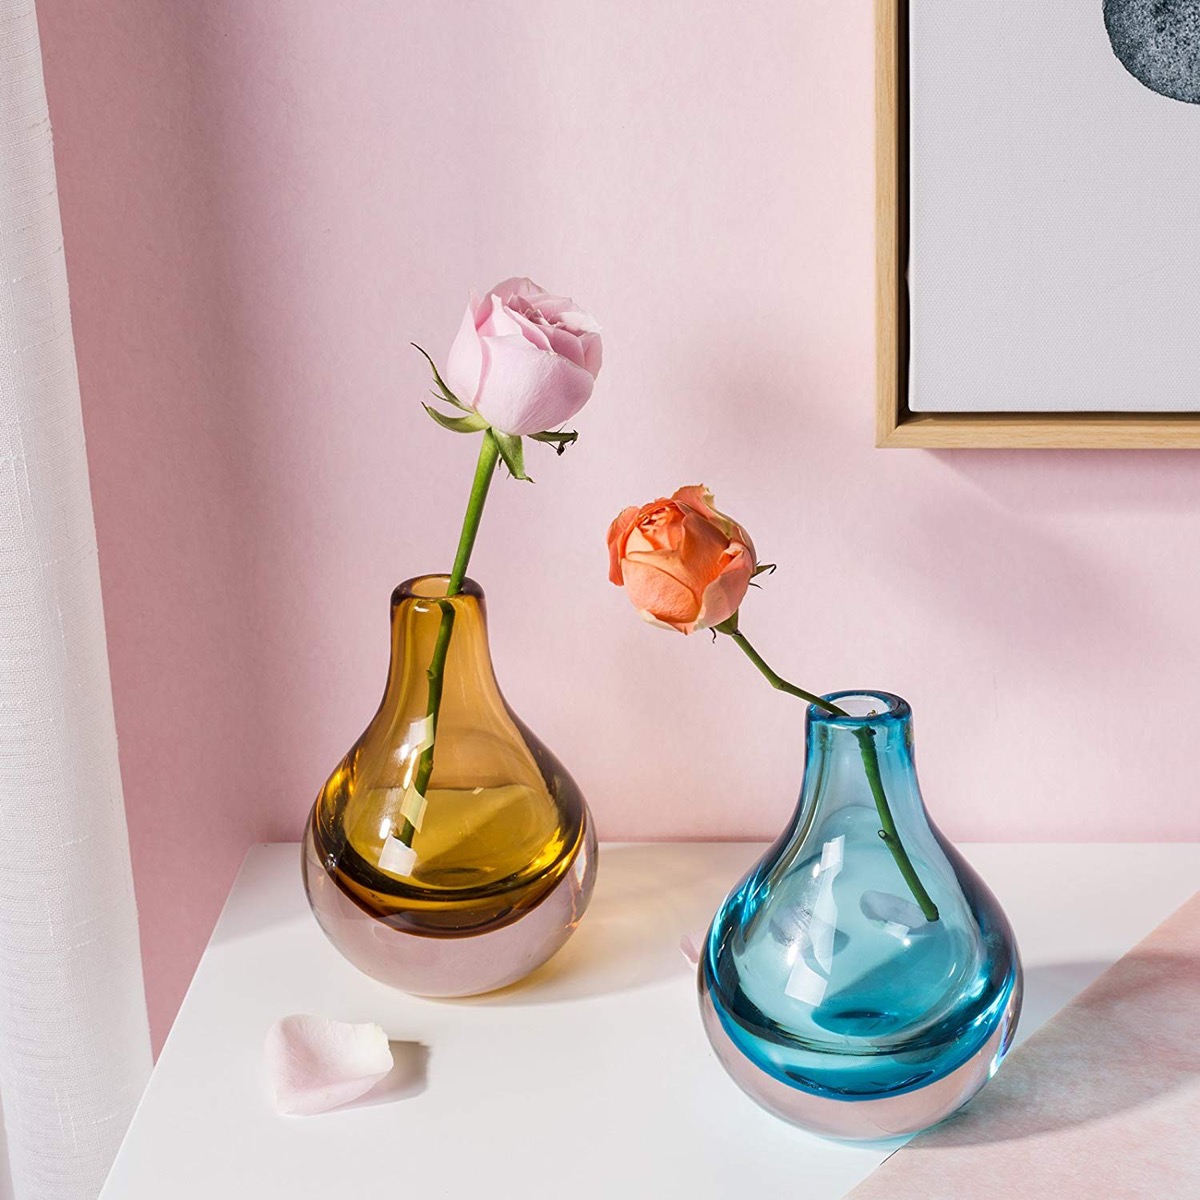 Vintage rose colored glass vases